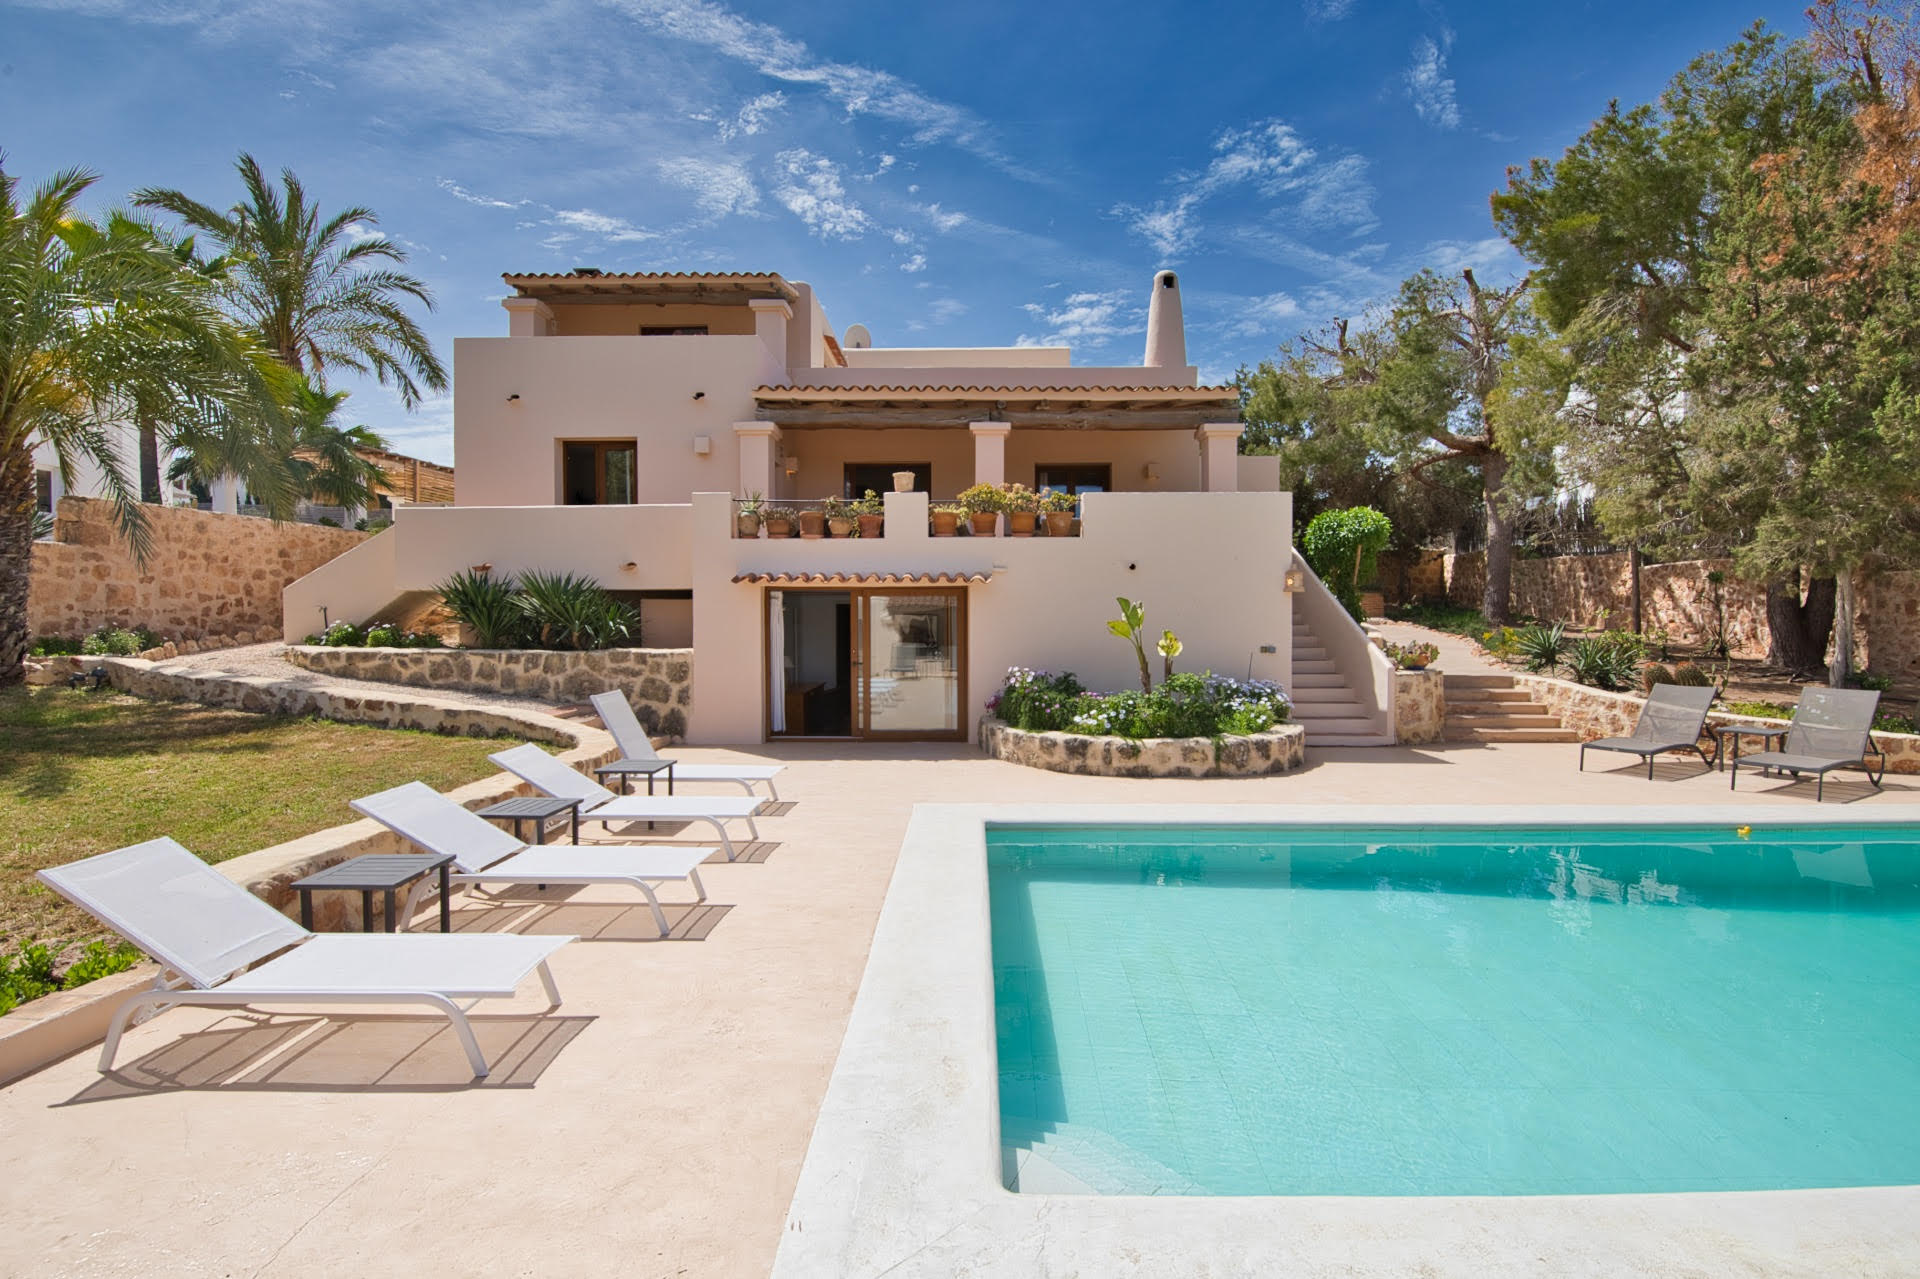 Belle villa située entre la plage de Cala Vadella et Cala Vadella